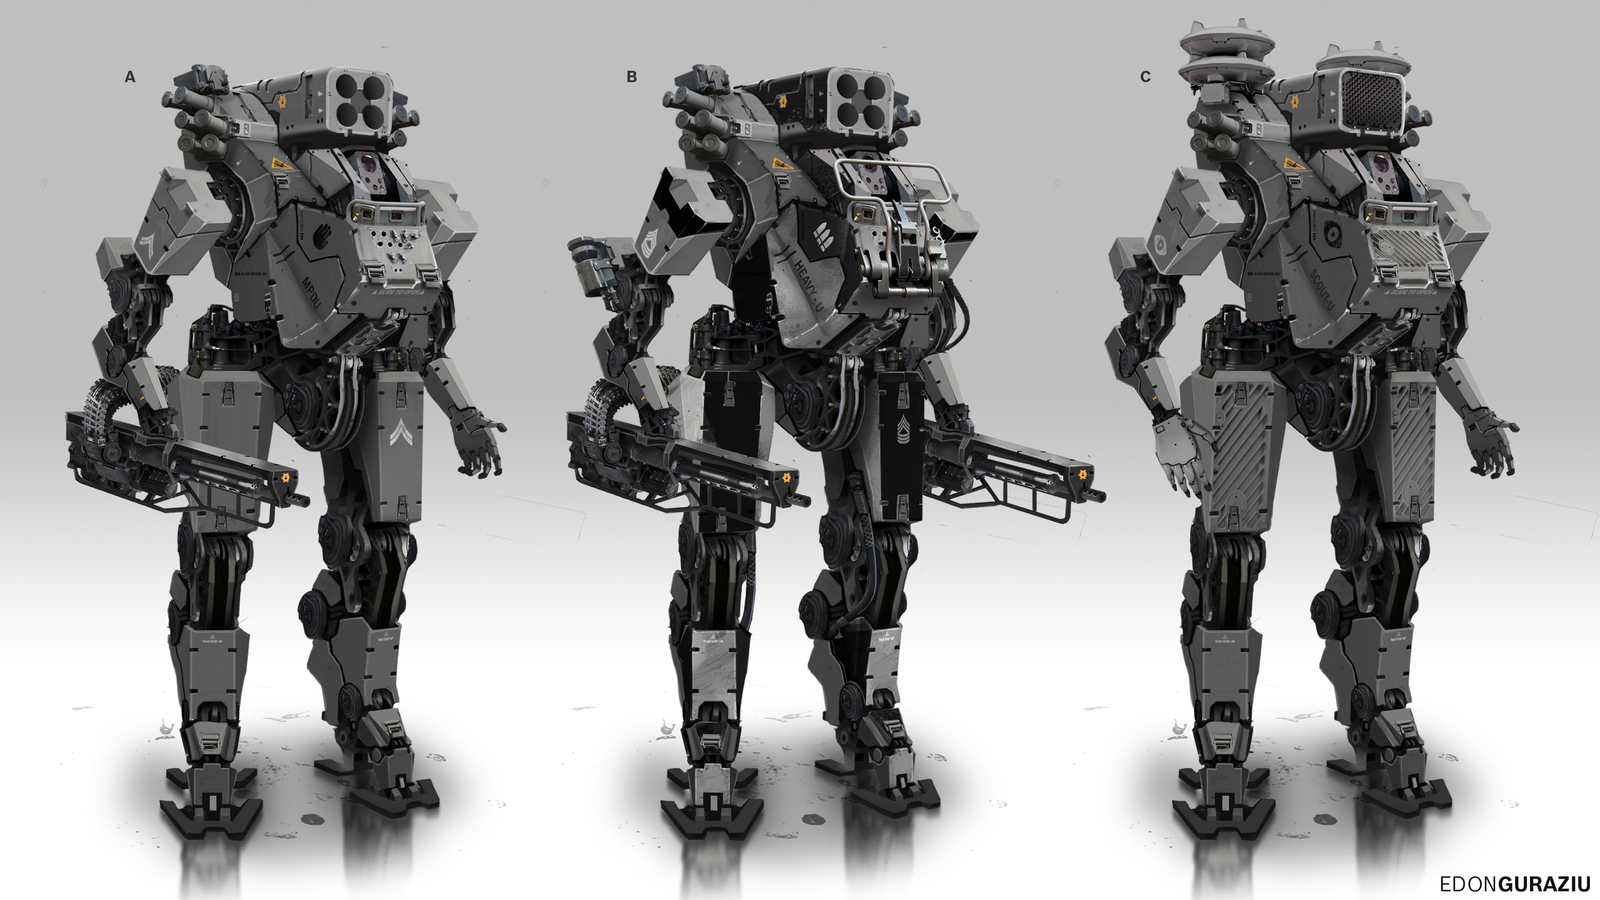 Battle Robot Concept by EdonGuraziu on DeviantArt